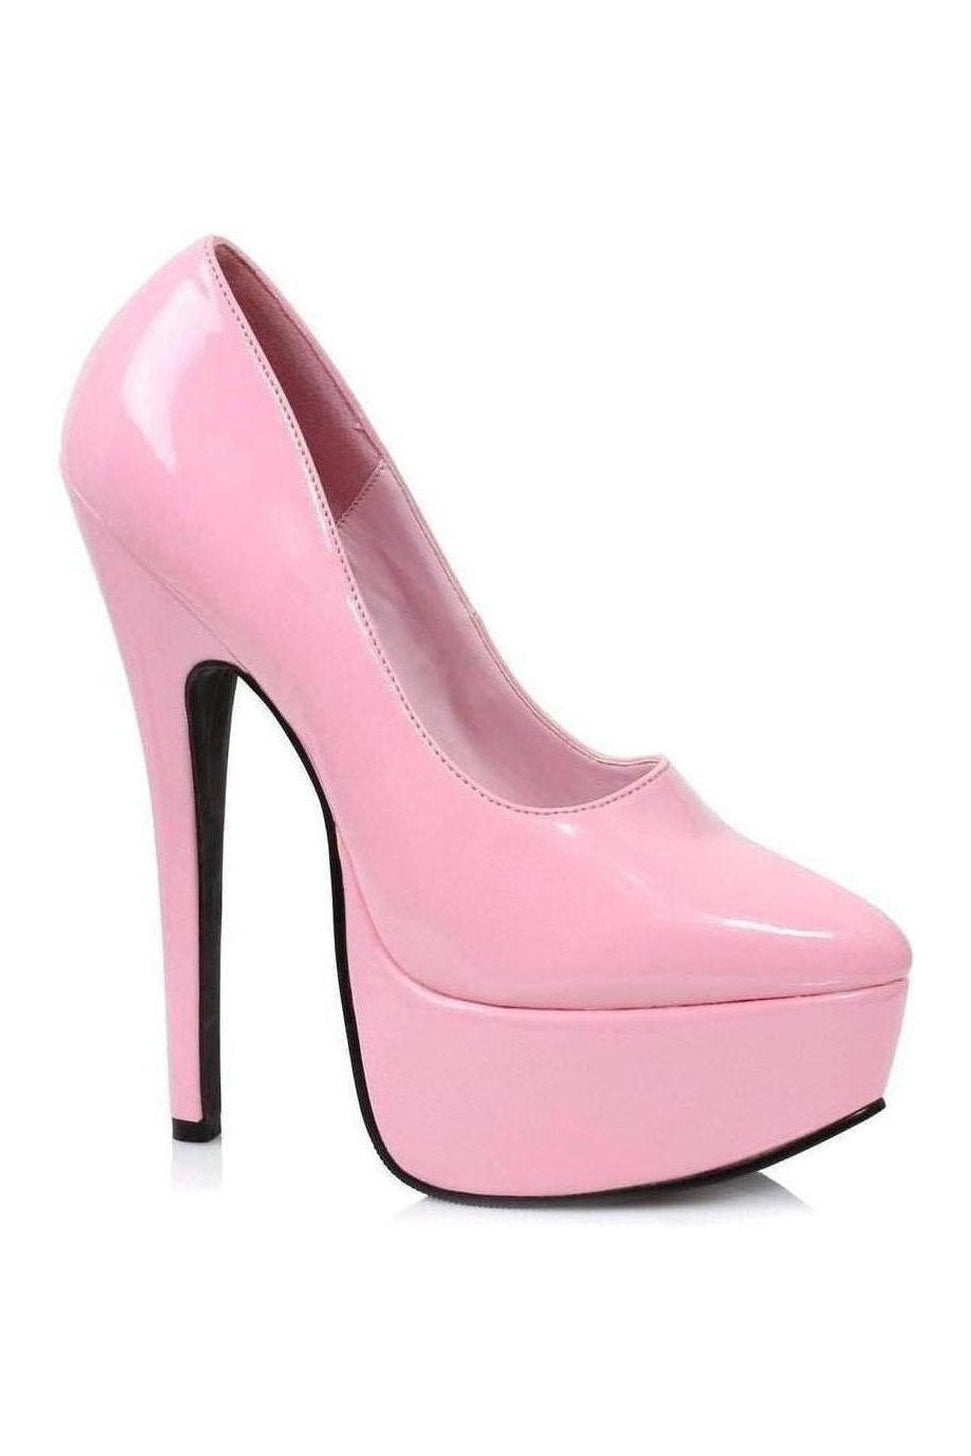 652-PRINCE Platform Pump | Pink Patent-Ellie Shoes-SEXYSHOES.COM